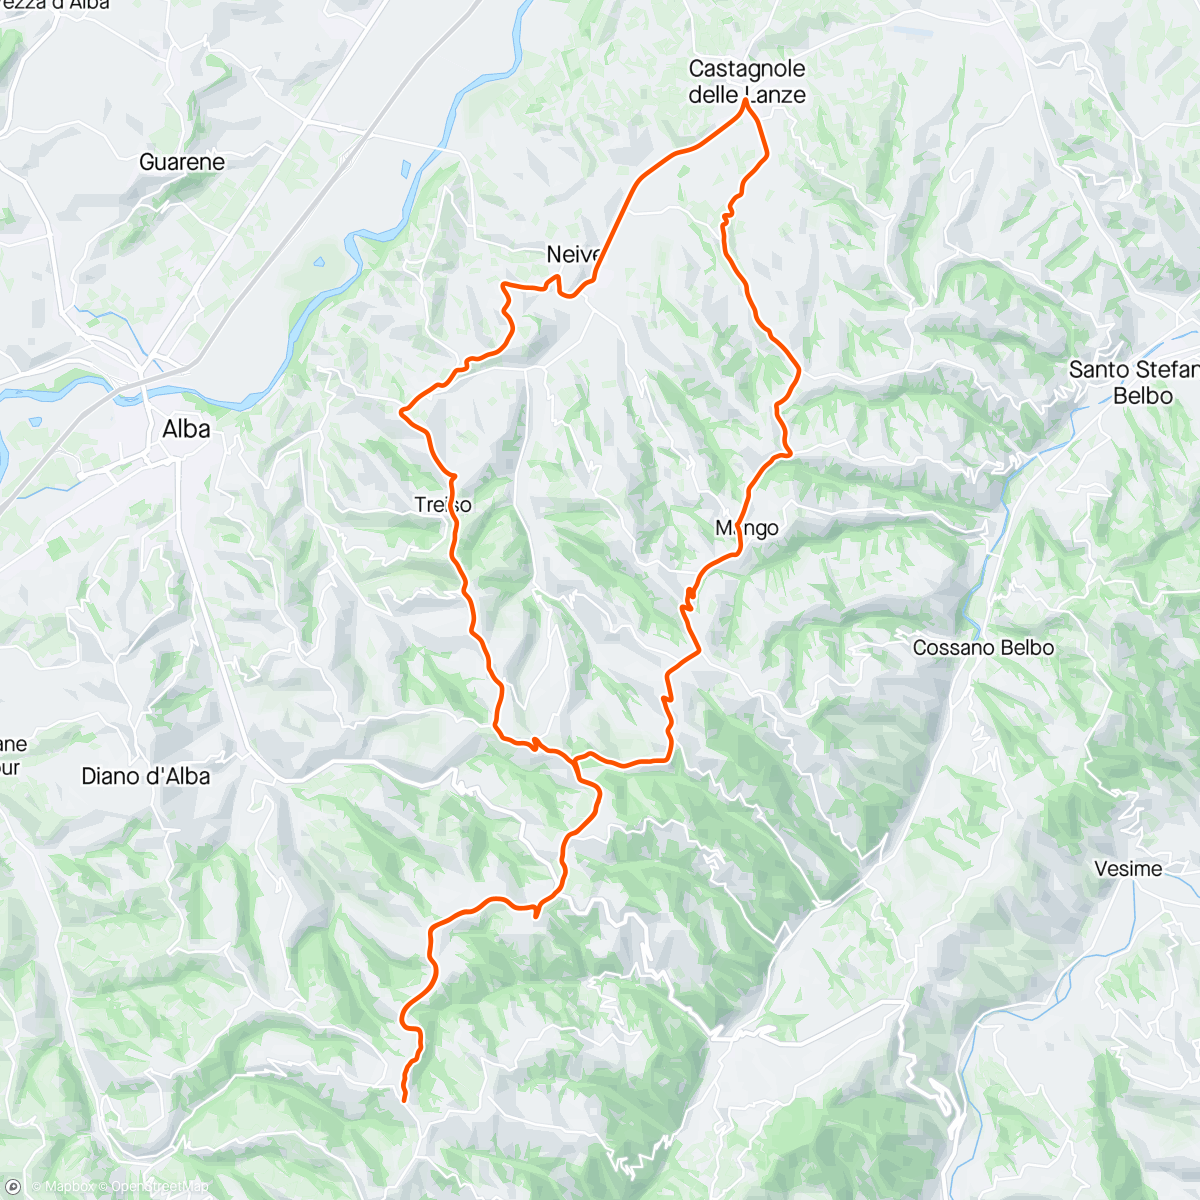 Map of the activity, Piemonte dag 5 - først besøk på Officine Matteo, så kveldstur i skitlækker kveldssol